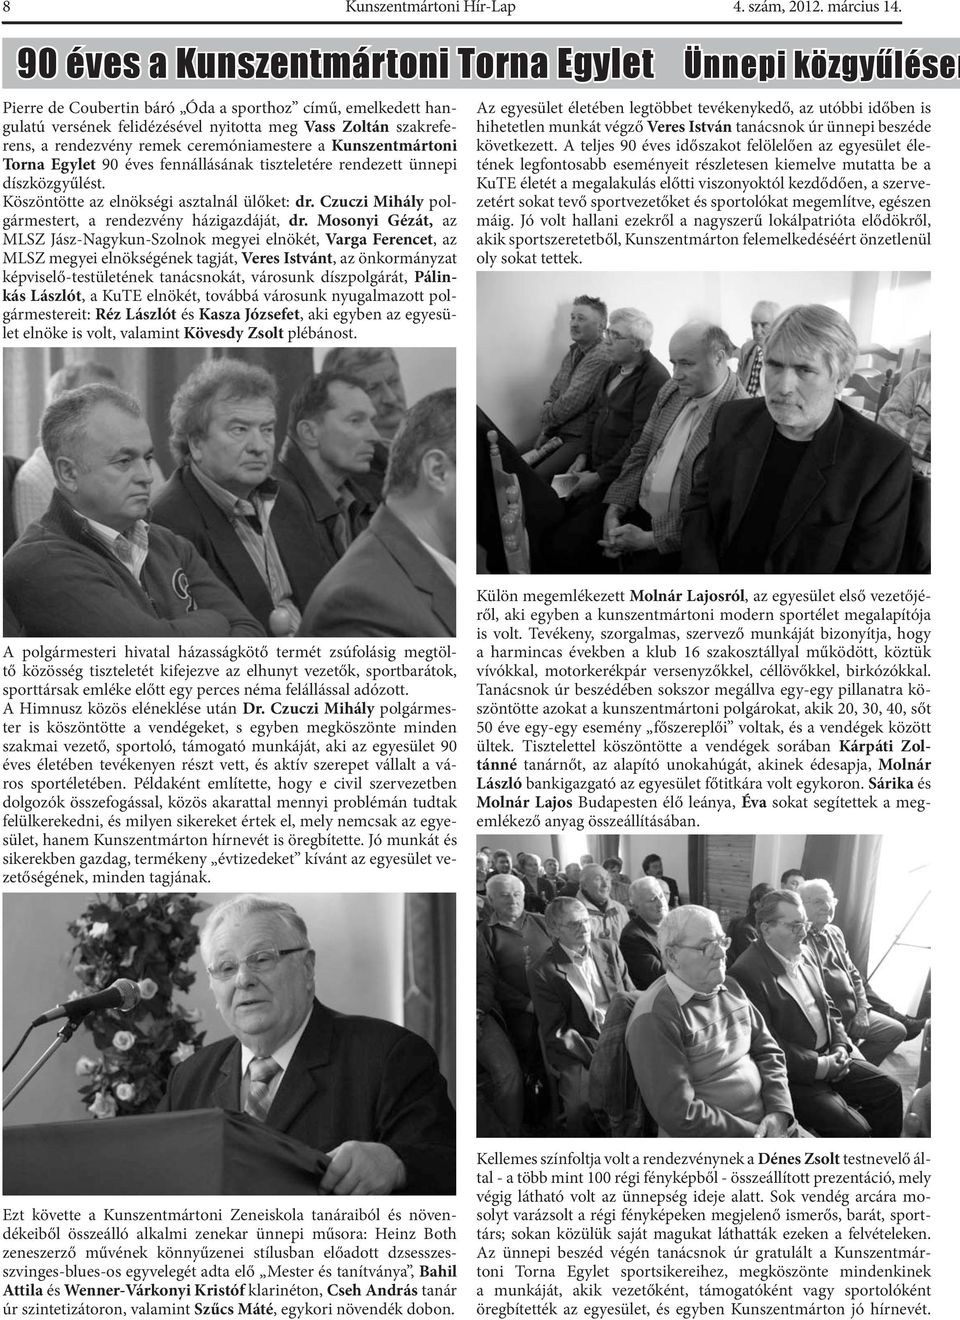 remek ceremóniamestere a Kunszentmártoni Torna Egylet 90 éves fennállásának tiszteletére rendezett ünnepi díszközgyűlést. Köszöntötte az elnökségi asztalnál ülőket: dr.